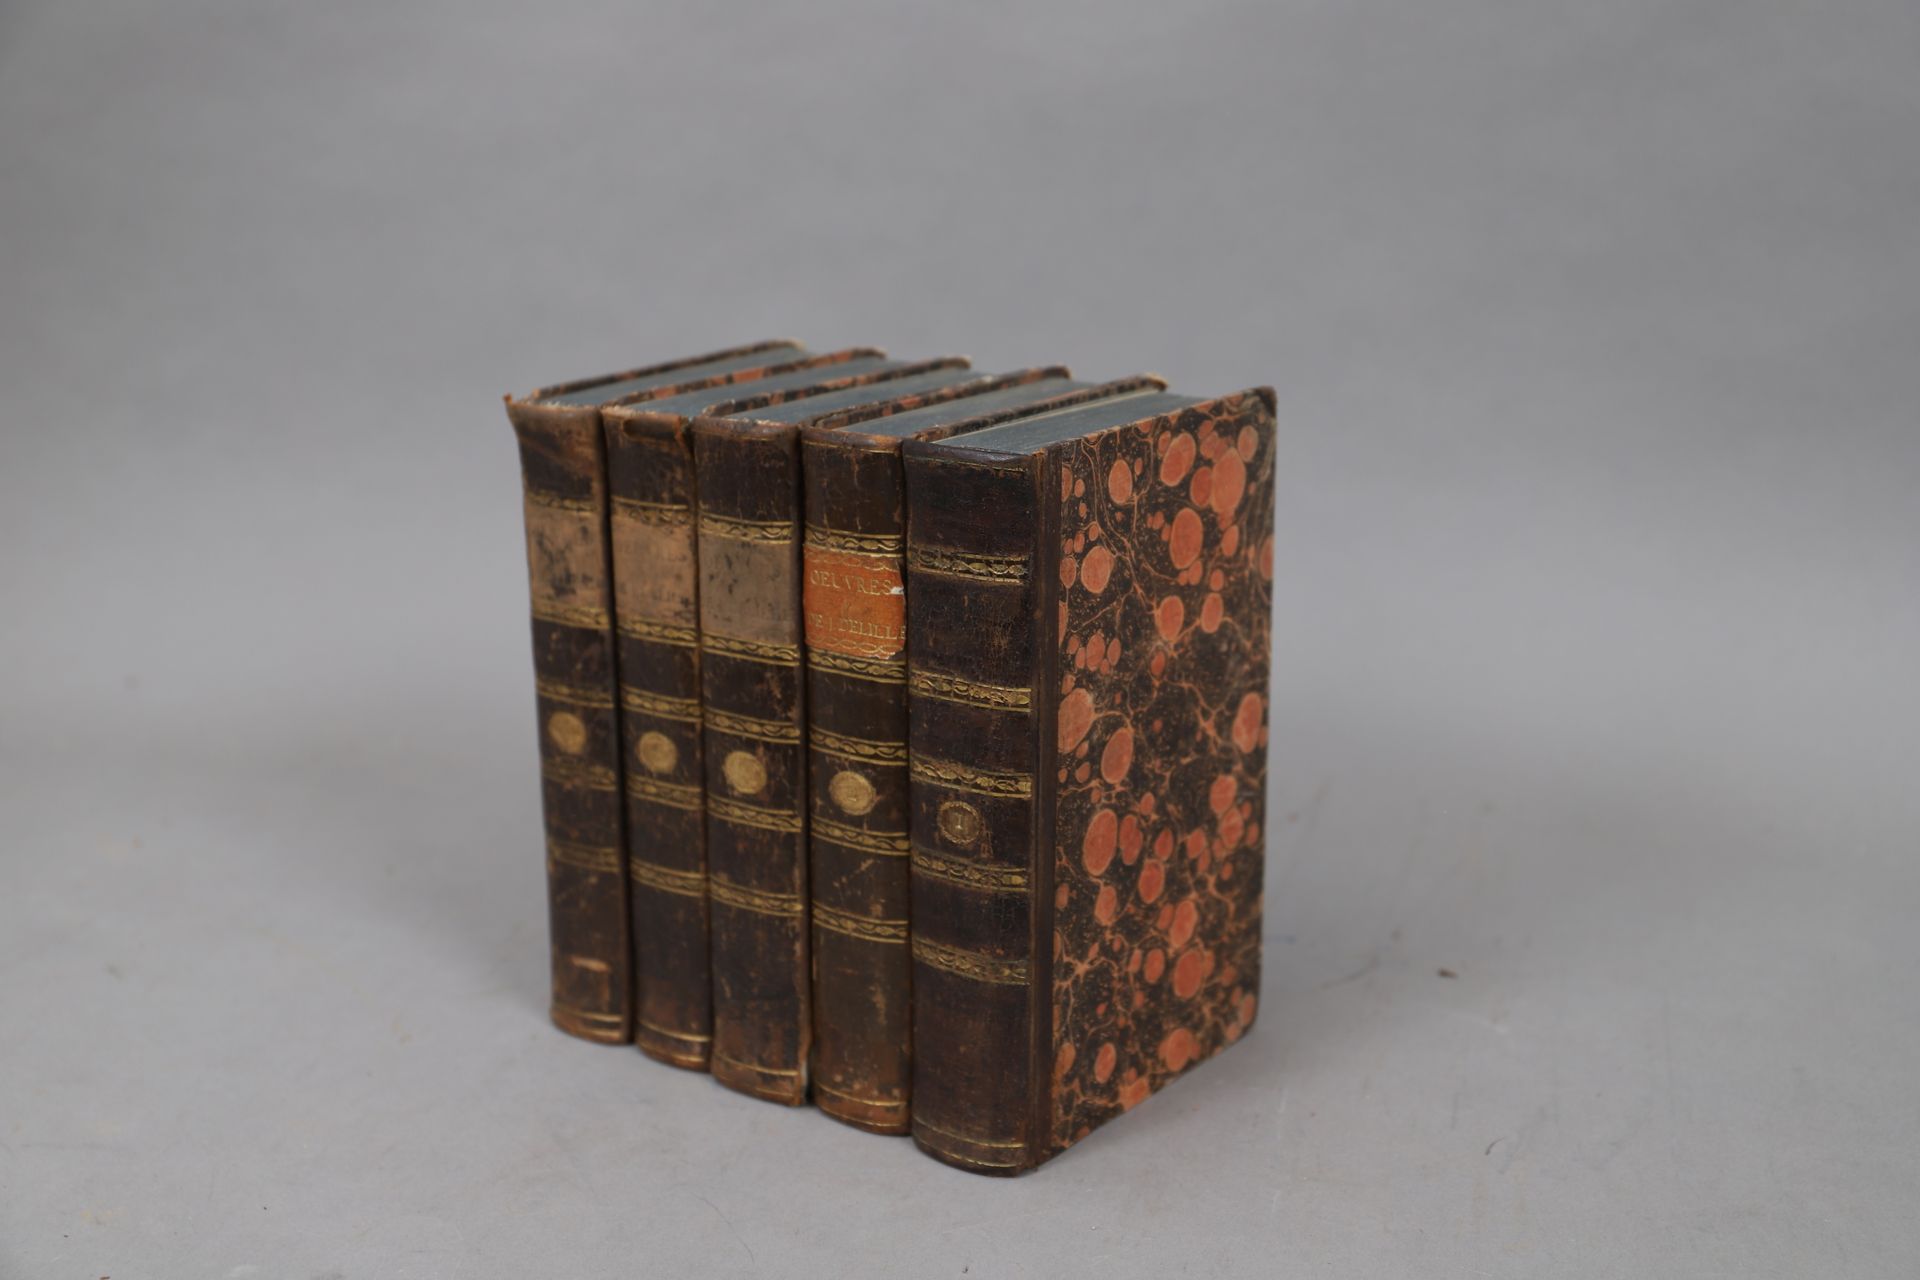 Null OBRAS de DELILLE

Bruselas 1817

5 volúmenes encuadernados.